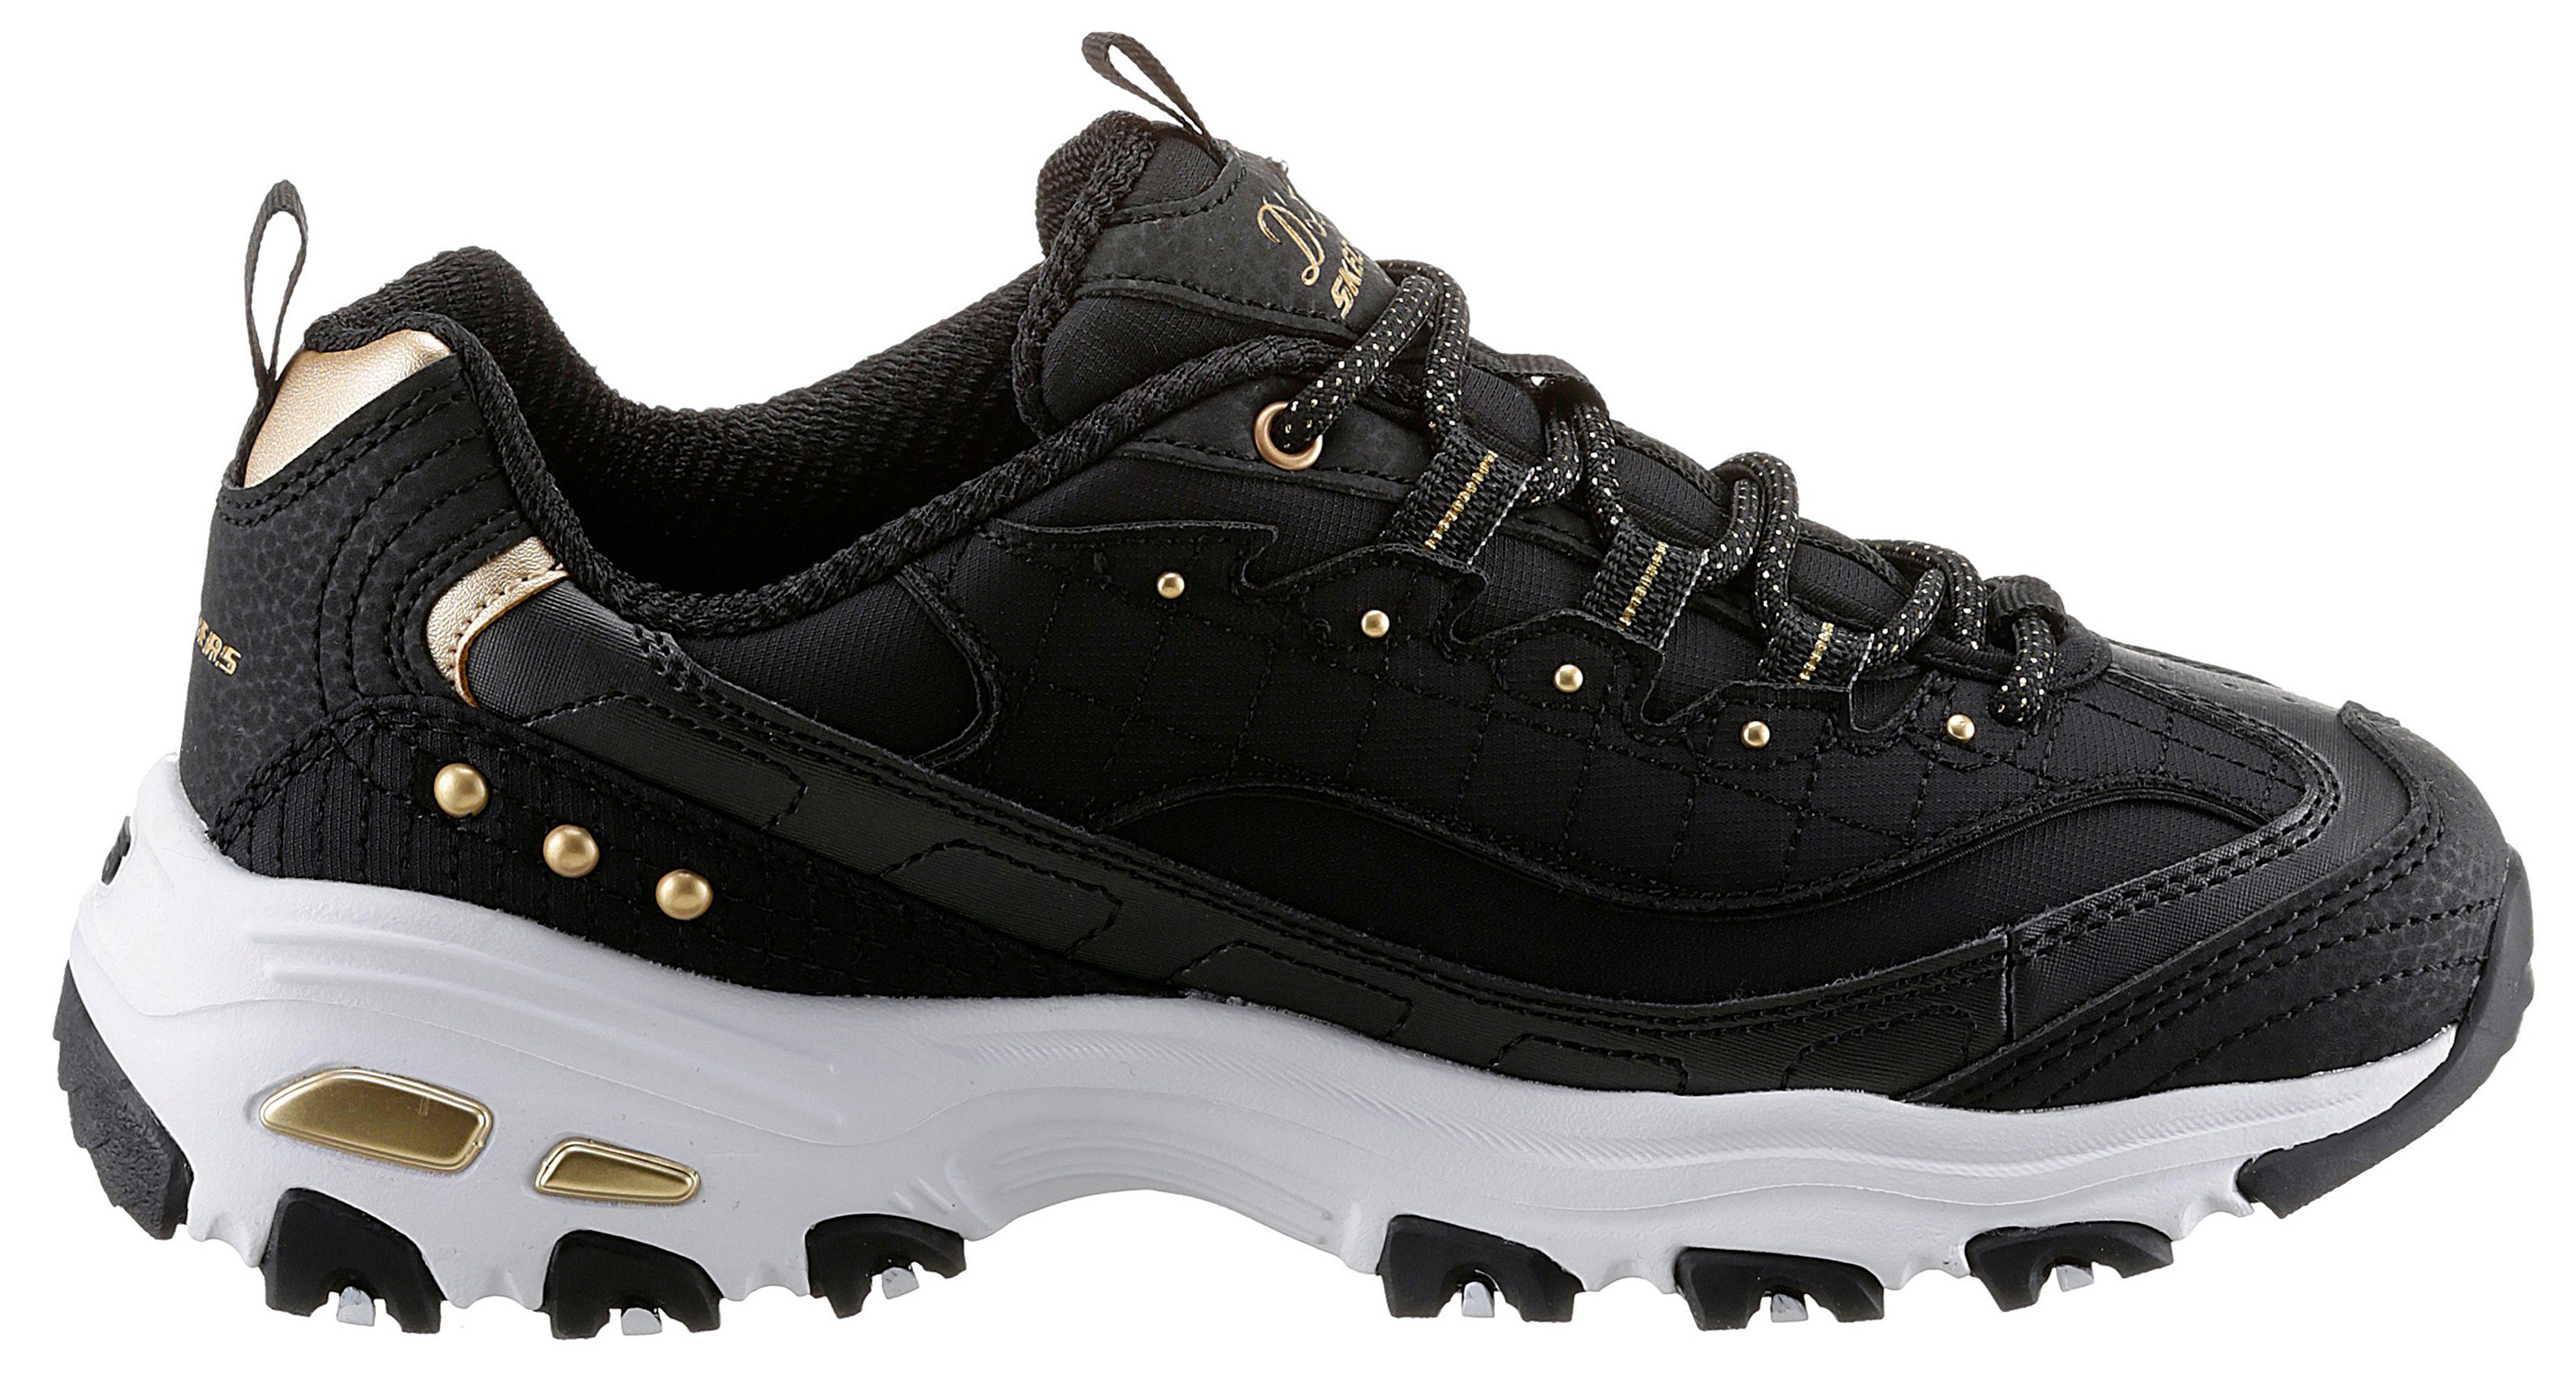 Skechers D'LITES mit Sneaker schönen Metallic-Details schwarz-goldfarben